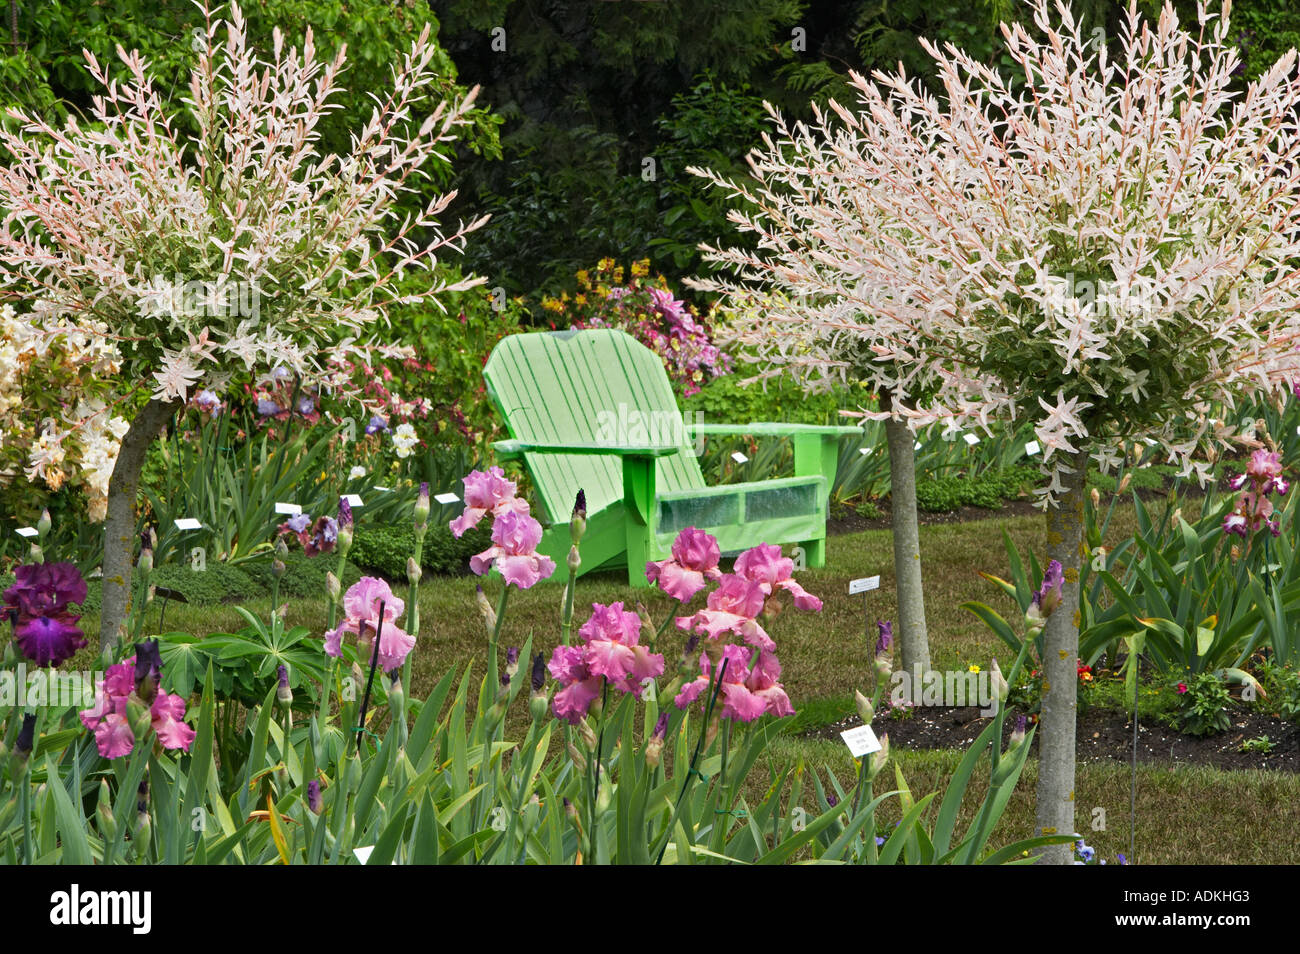 Iris anzeigen Gärten mit weißlichen Bush Bäume Salix Weiden Folge Hakuro Nishiki Schreiner s Iris Gardens Stockfoto